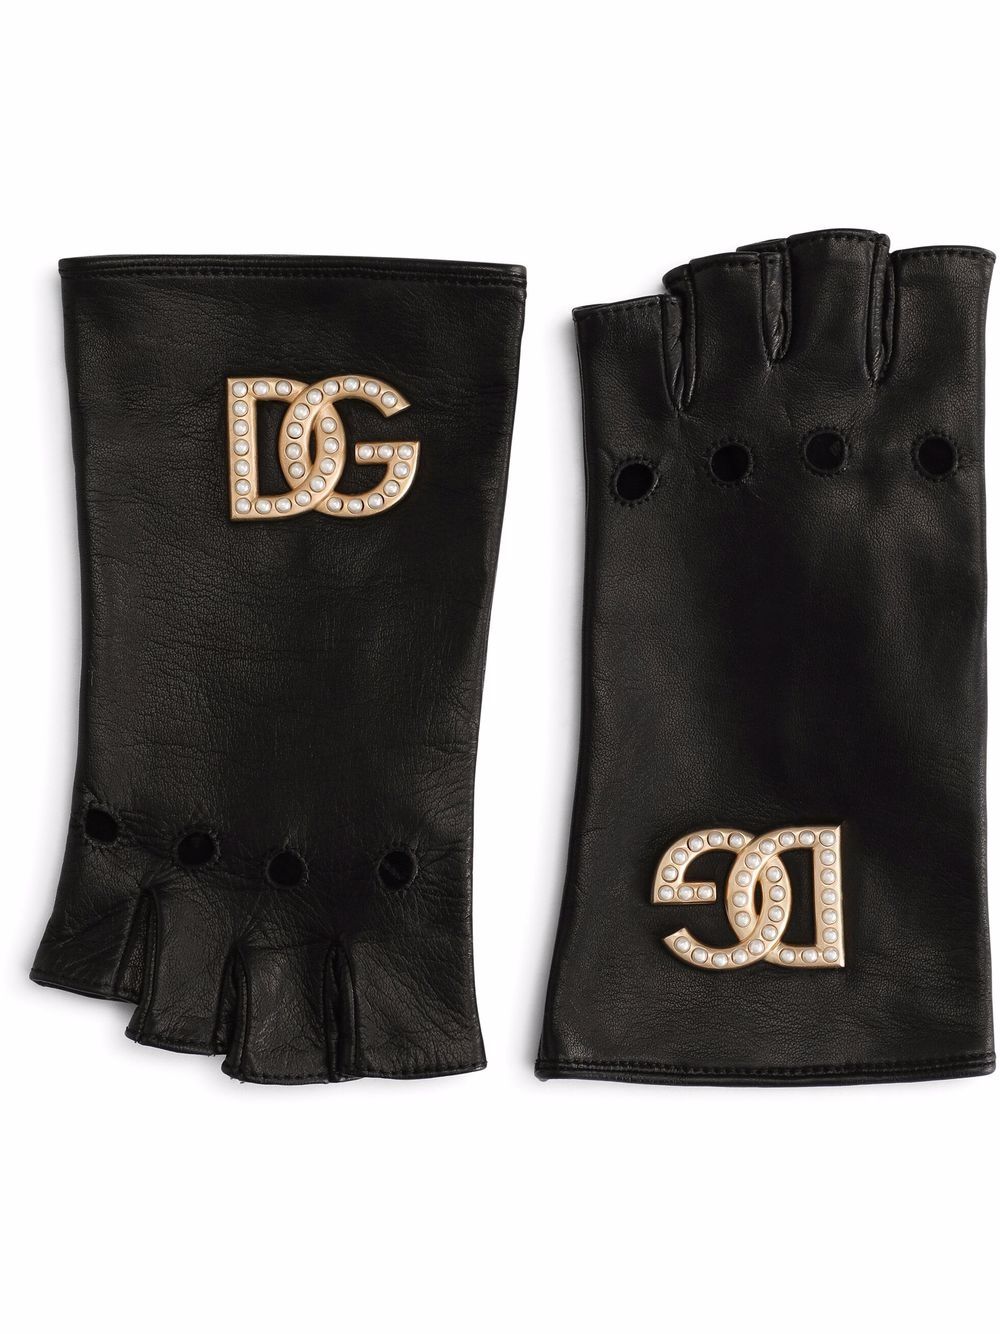 фото Dolce & gabbana перчатки-митенки